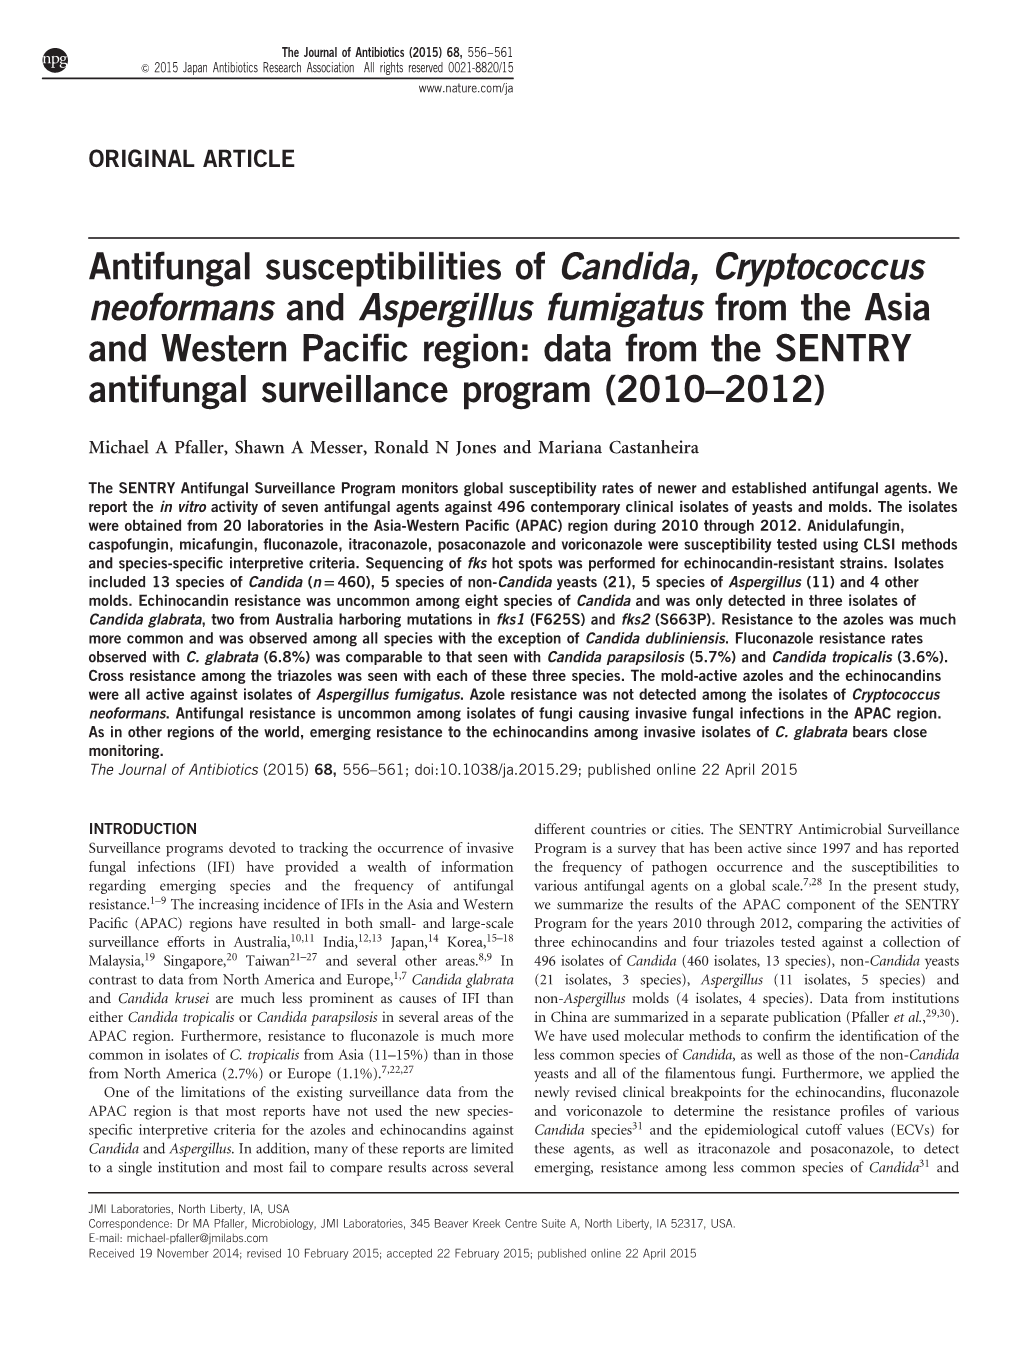 Antifungal Susceptibilities of Candida, Cryptococcus Neoformans